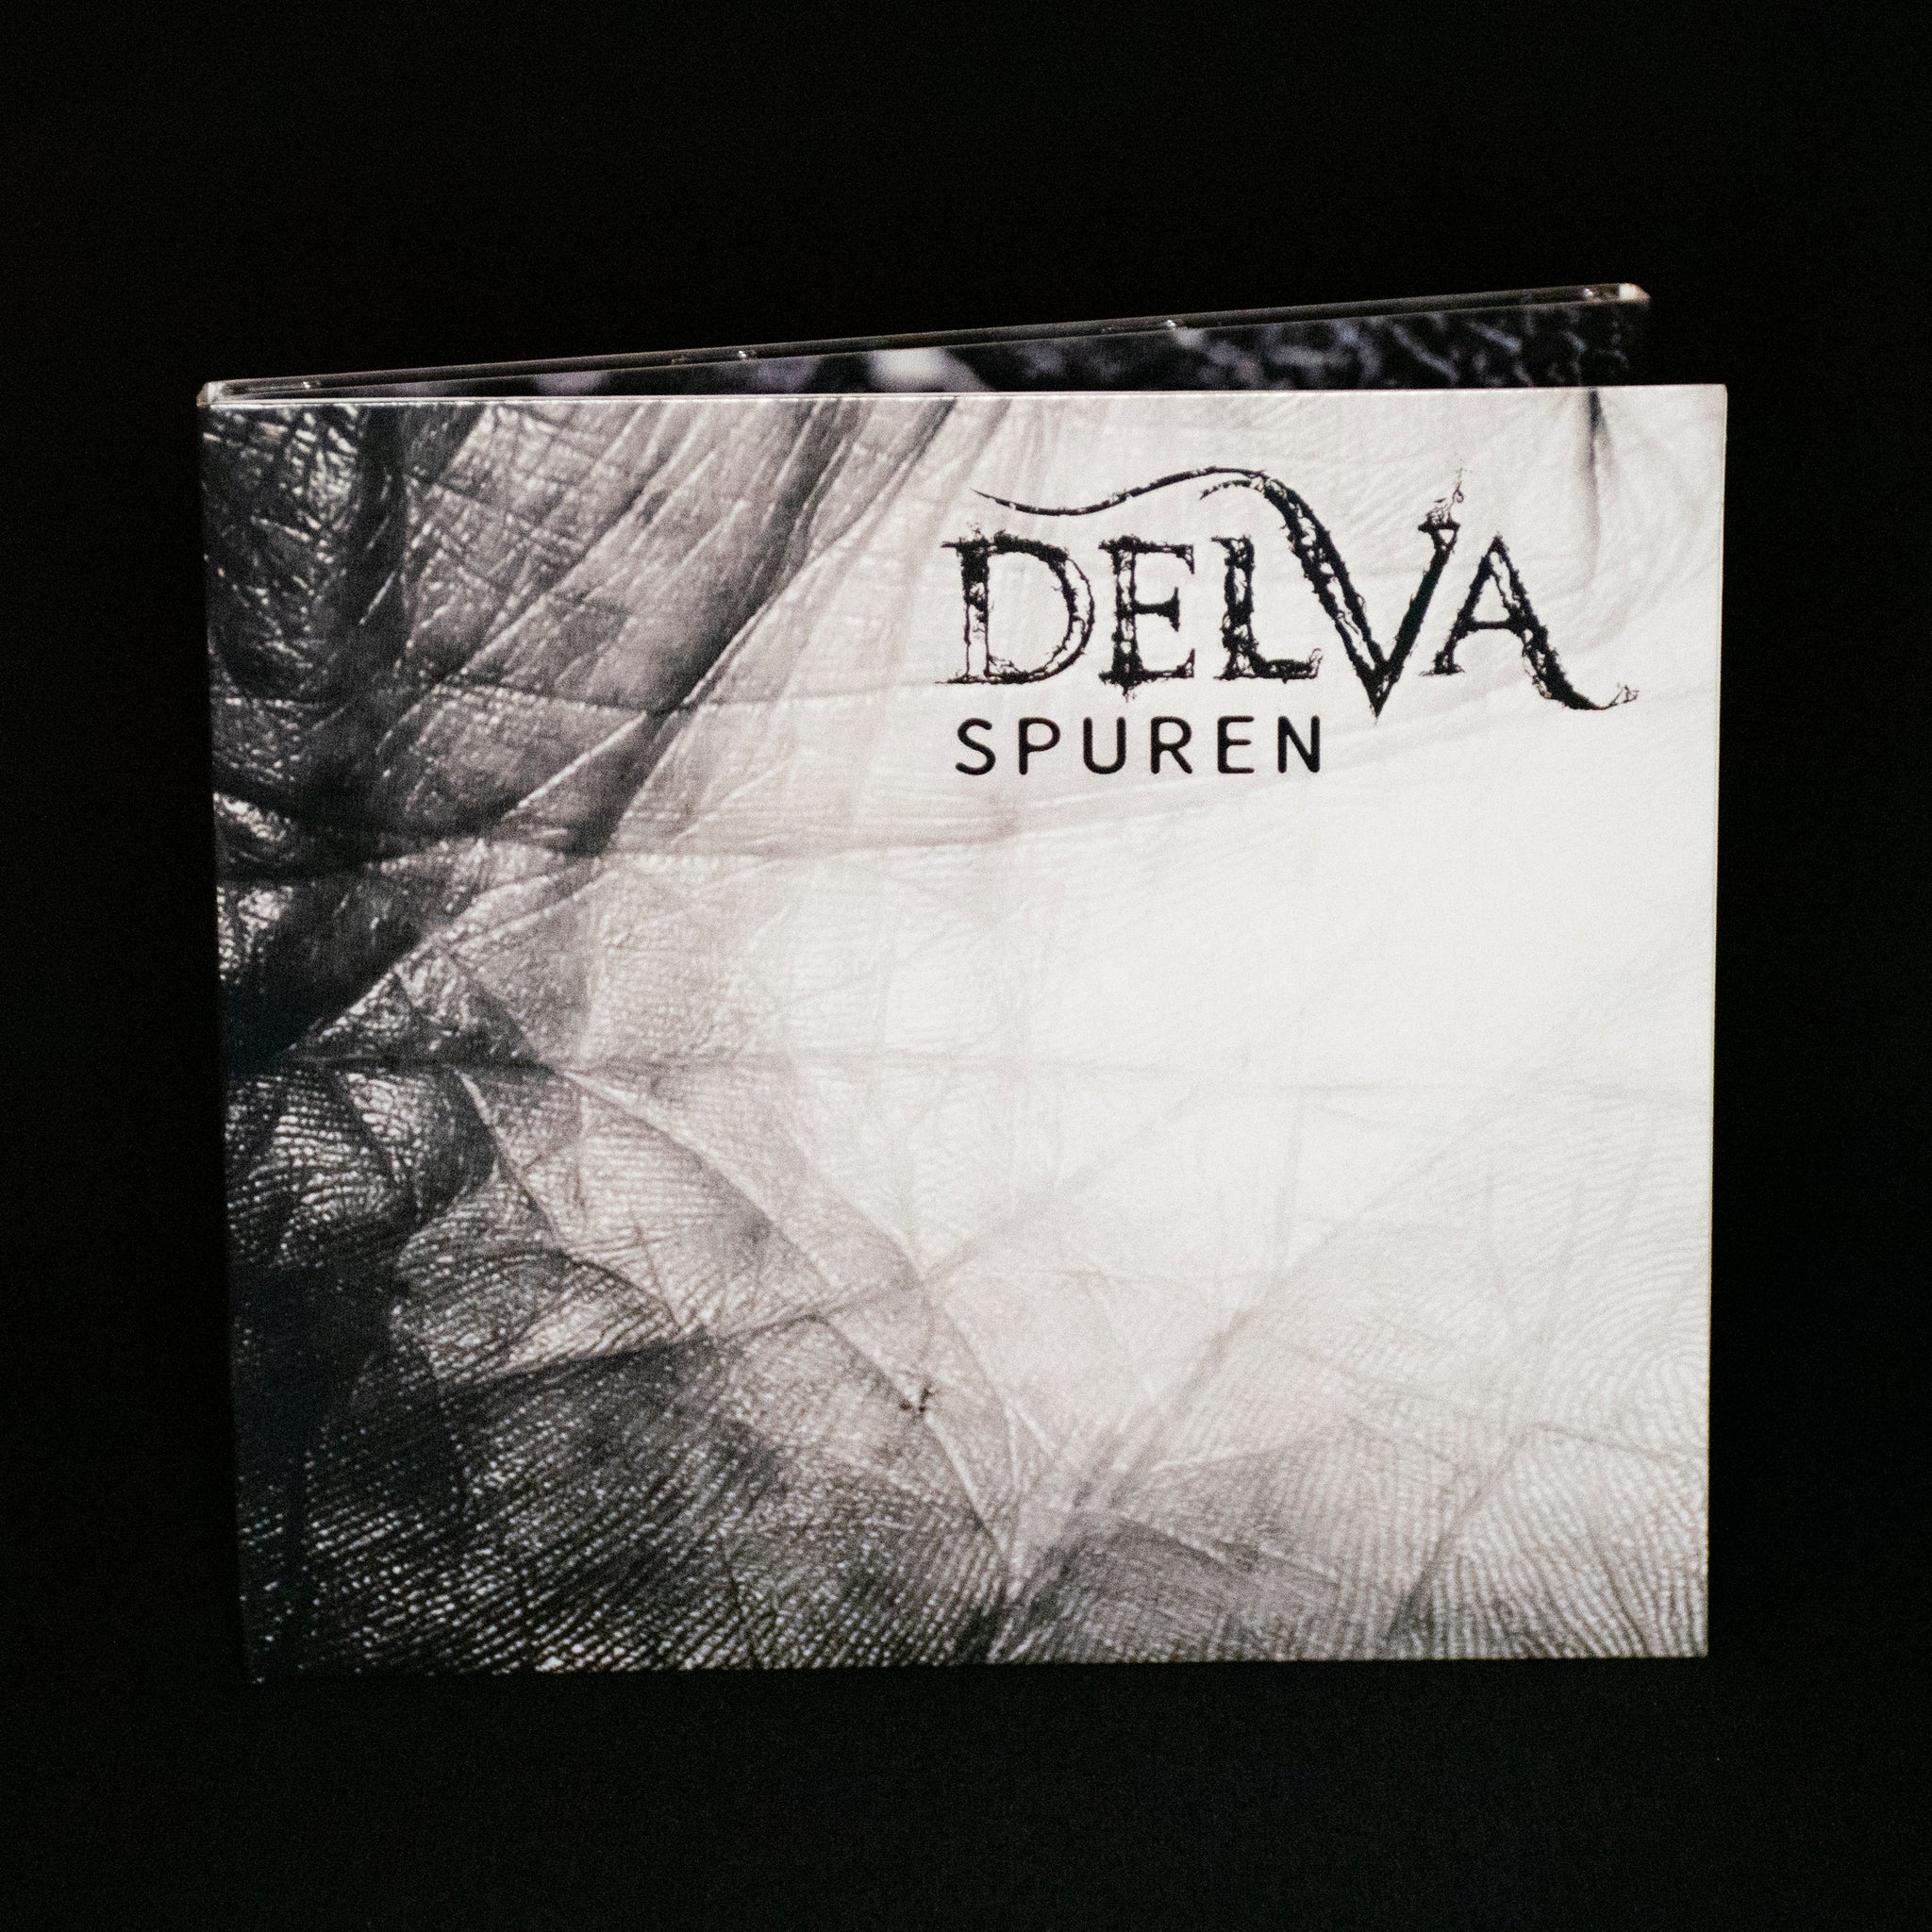 Delva - Spuren LP CD